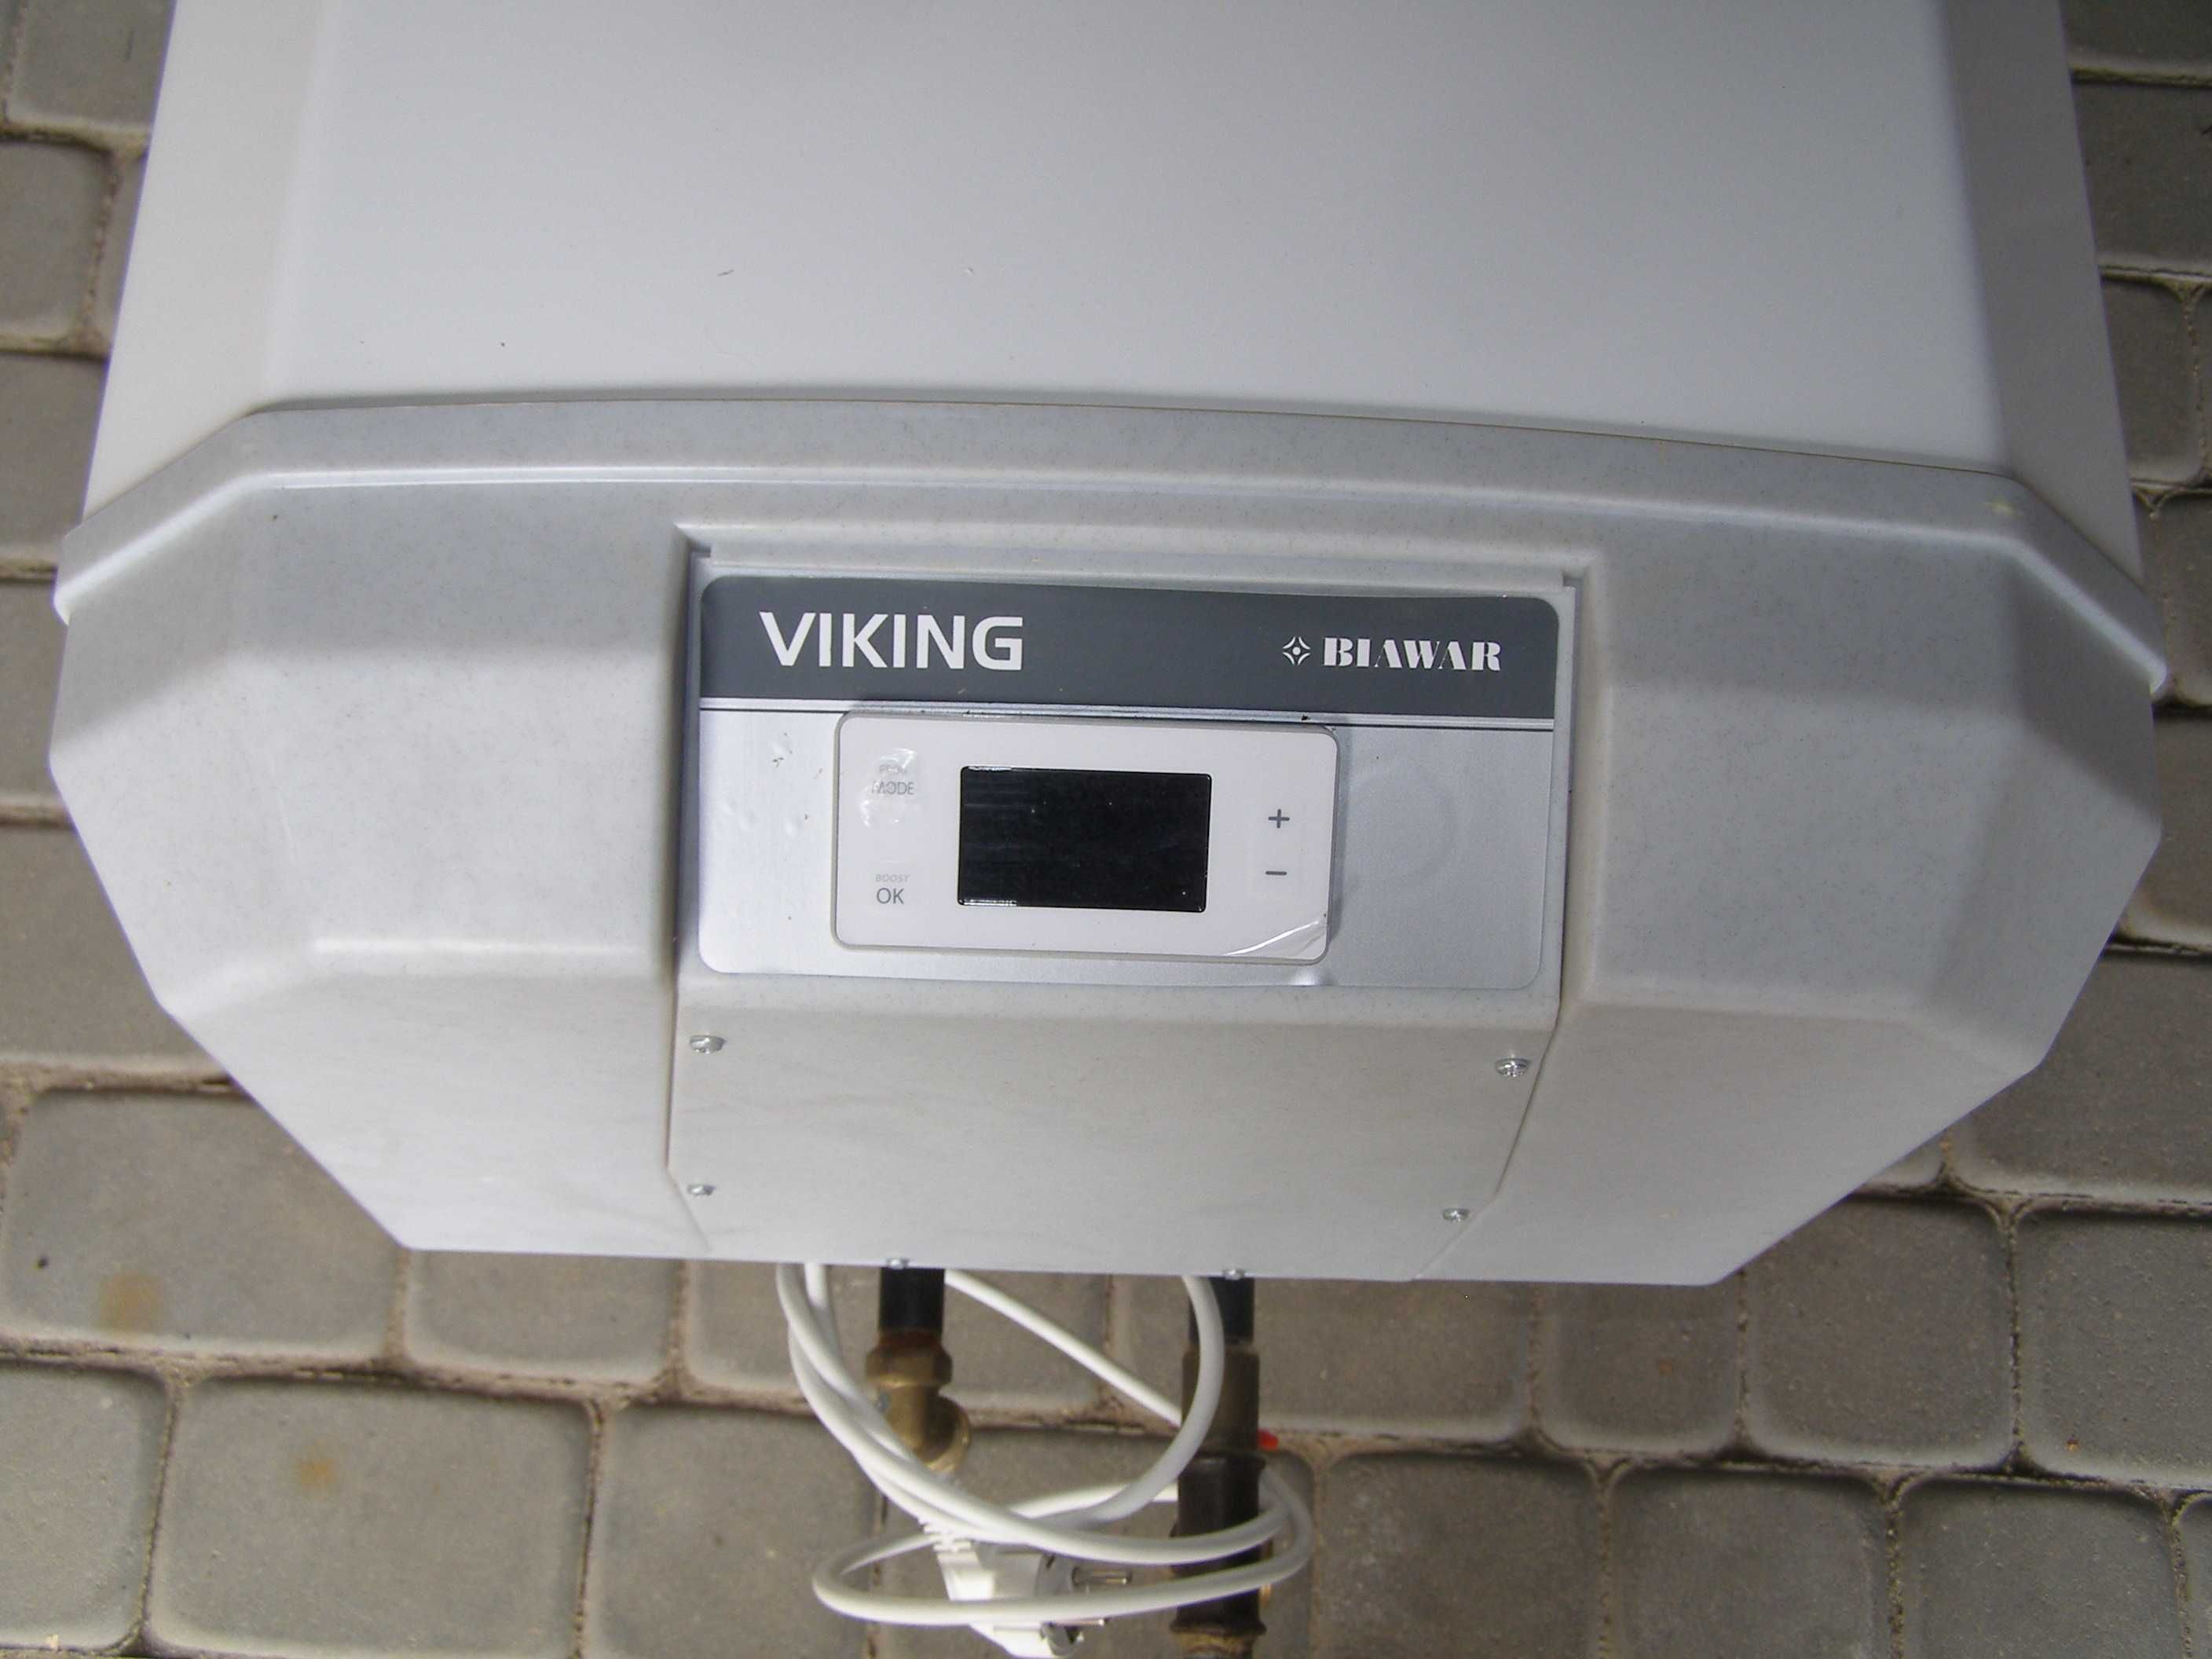 Elektryczny podgrzewacz wody biawar, viking smart, 120 l - używany